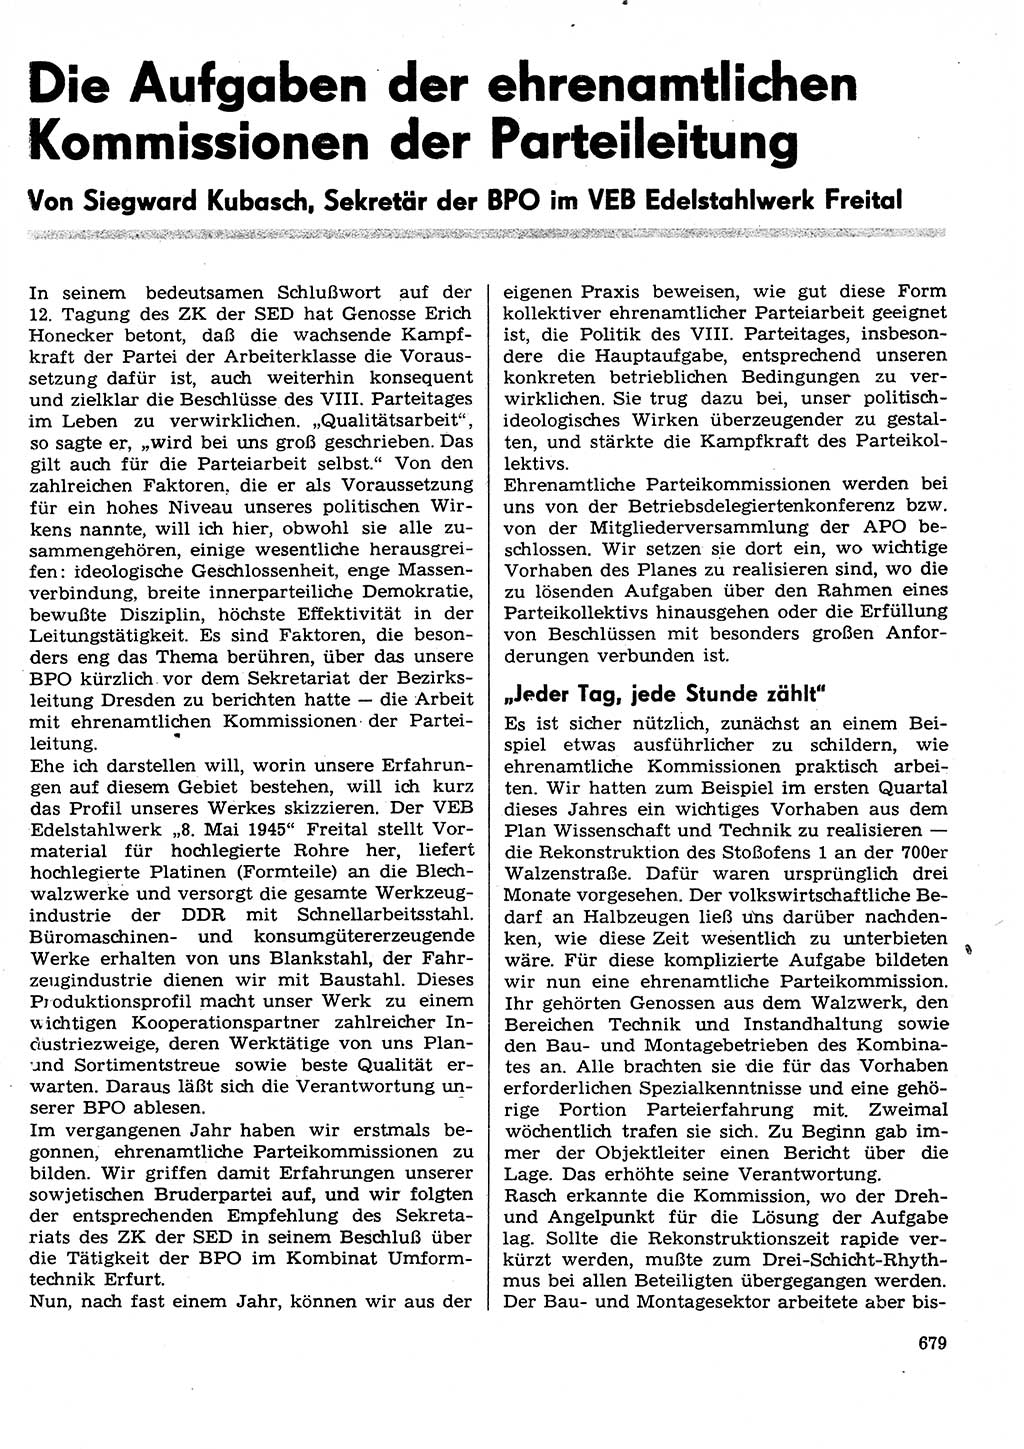 Neuer Weg (NW), Organ des Zentralkomitees (ZK) der SED (Sozialistische Einheitspartei Deutschlands) für Fragen des Parteilebens, 29. Jahrgang [Deutsche Demokratische Republik (DDR)] 1974, Seite 679 (NW ZK SED DDR 1974, S. 679)